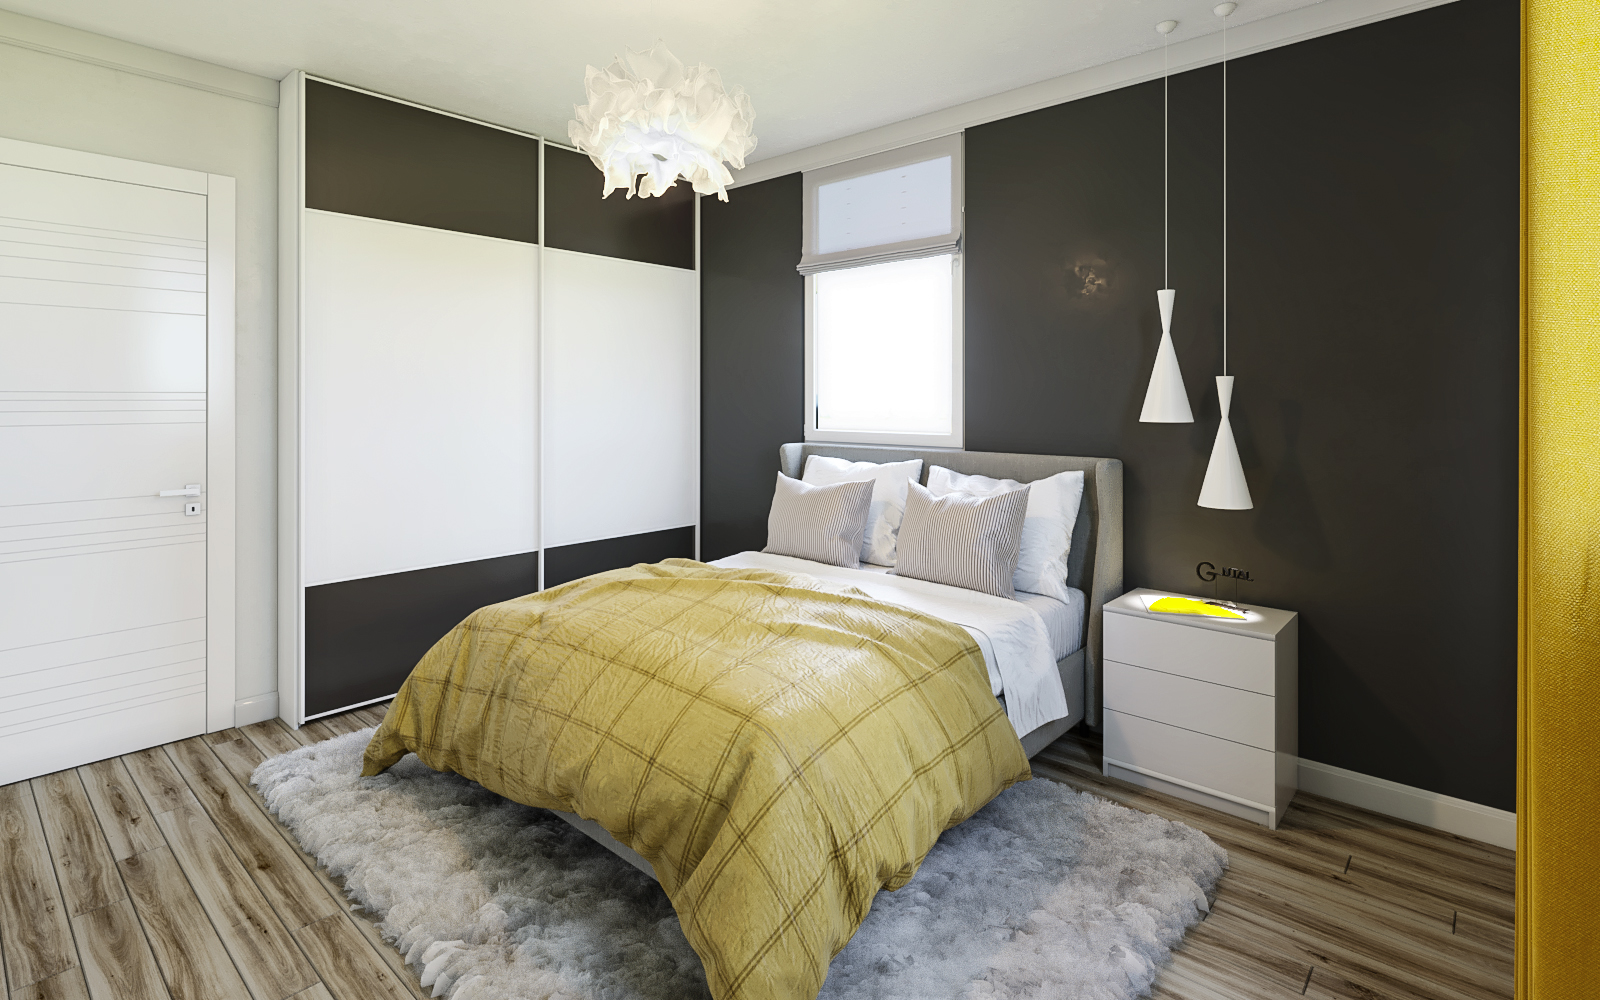 Yatak odası numarası 1 in 3d max corona render resim